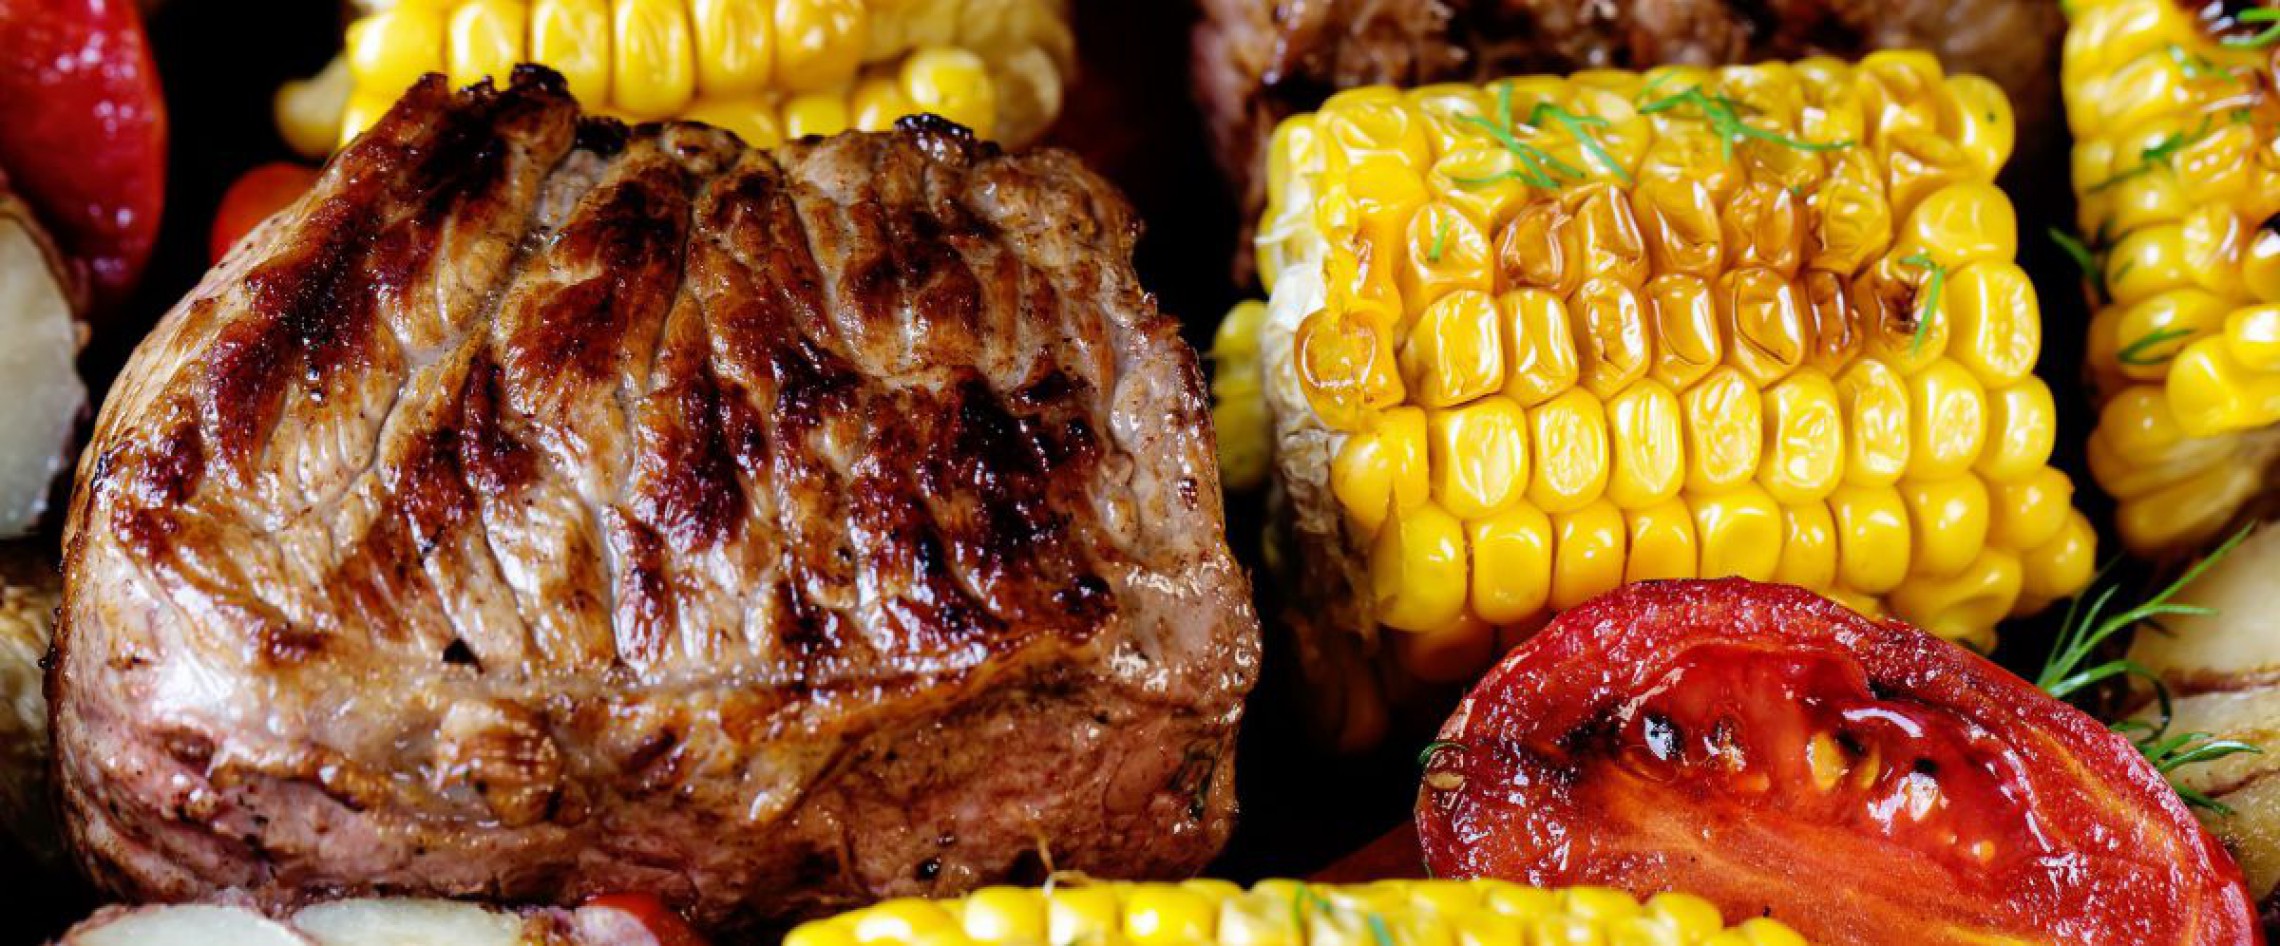 Rindfleisch, Mais und Tomaten am Grillrost